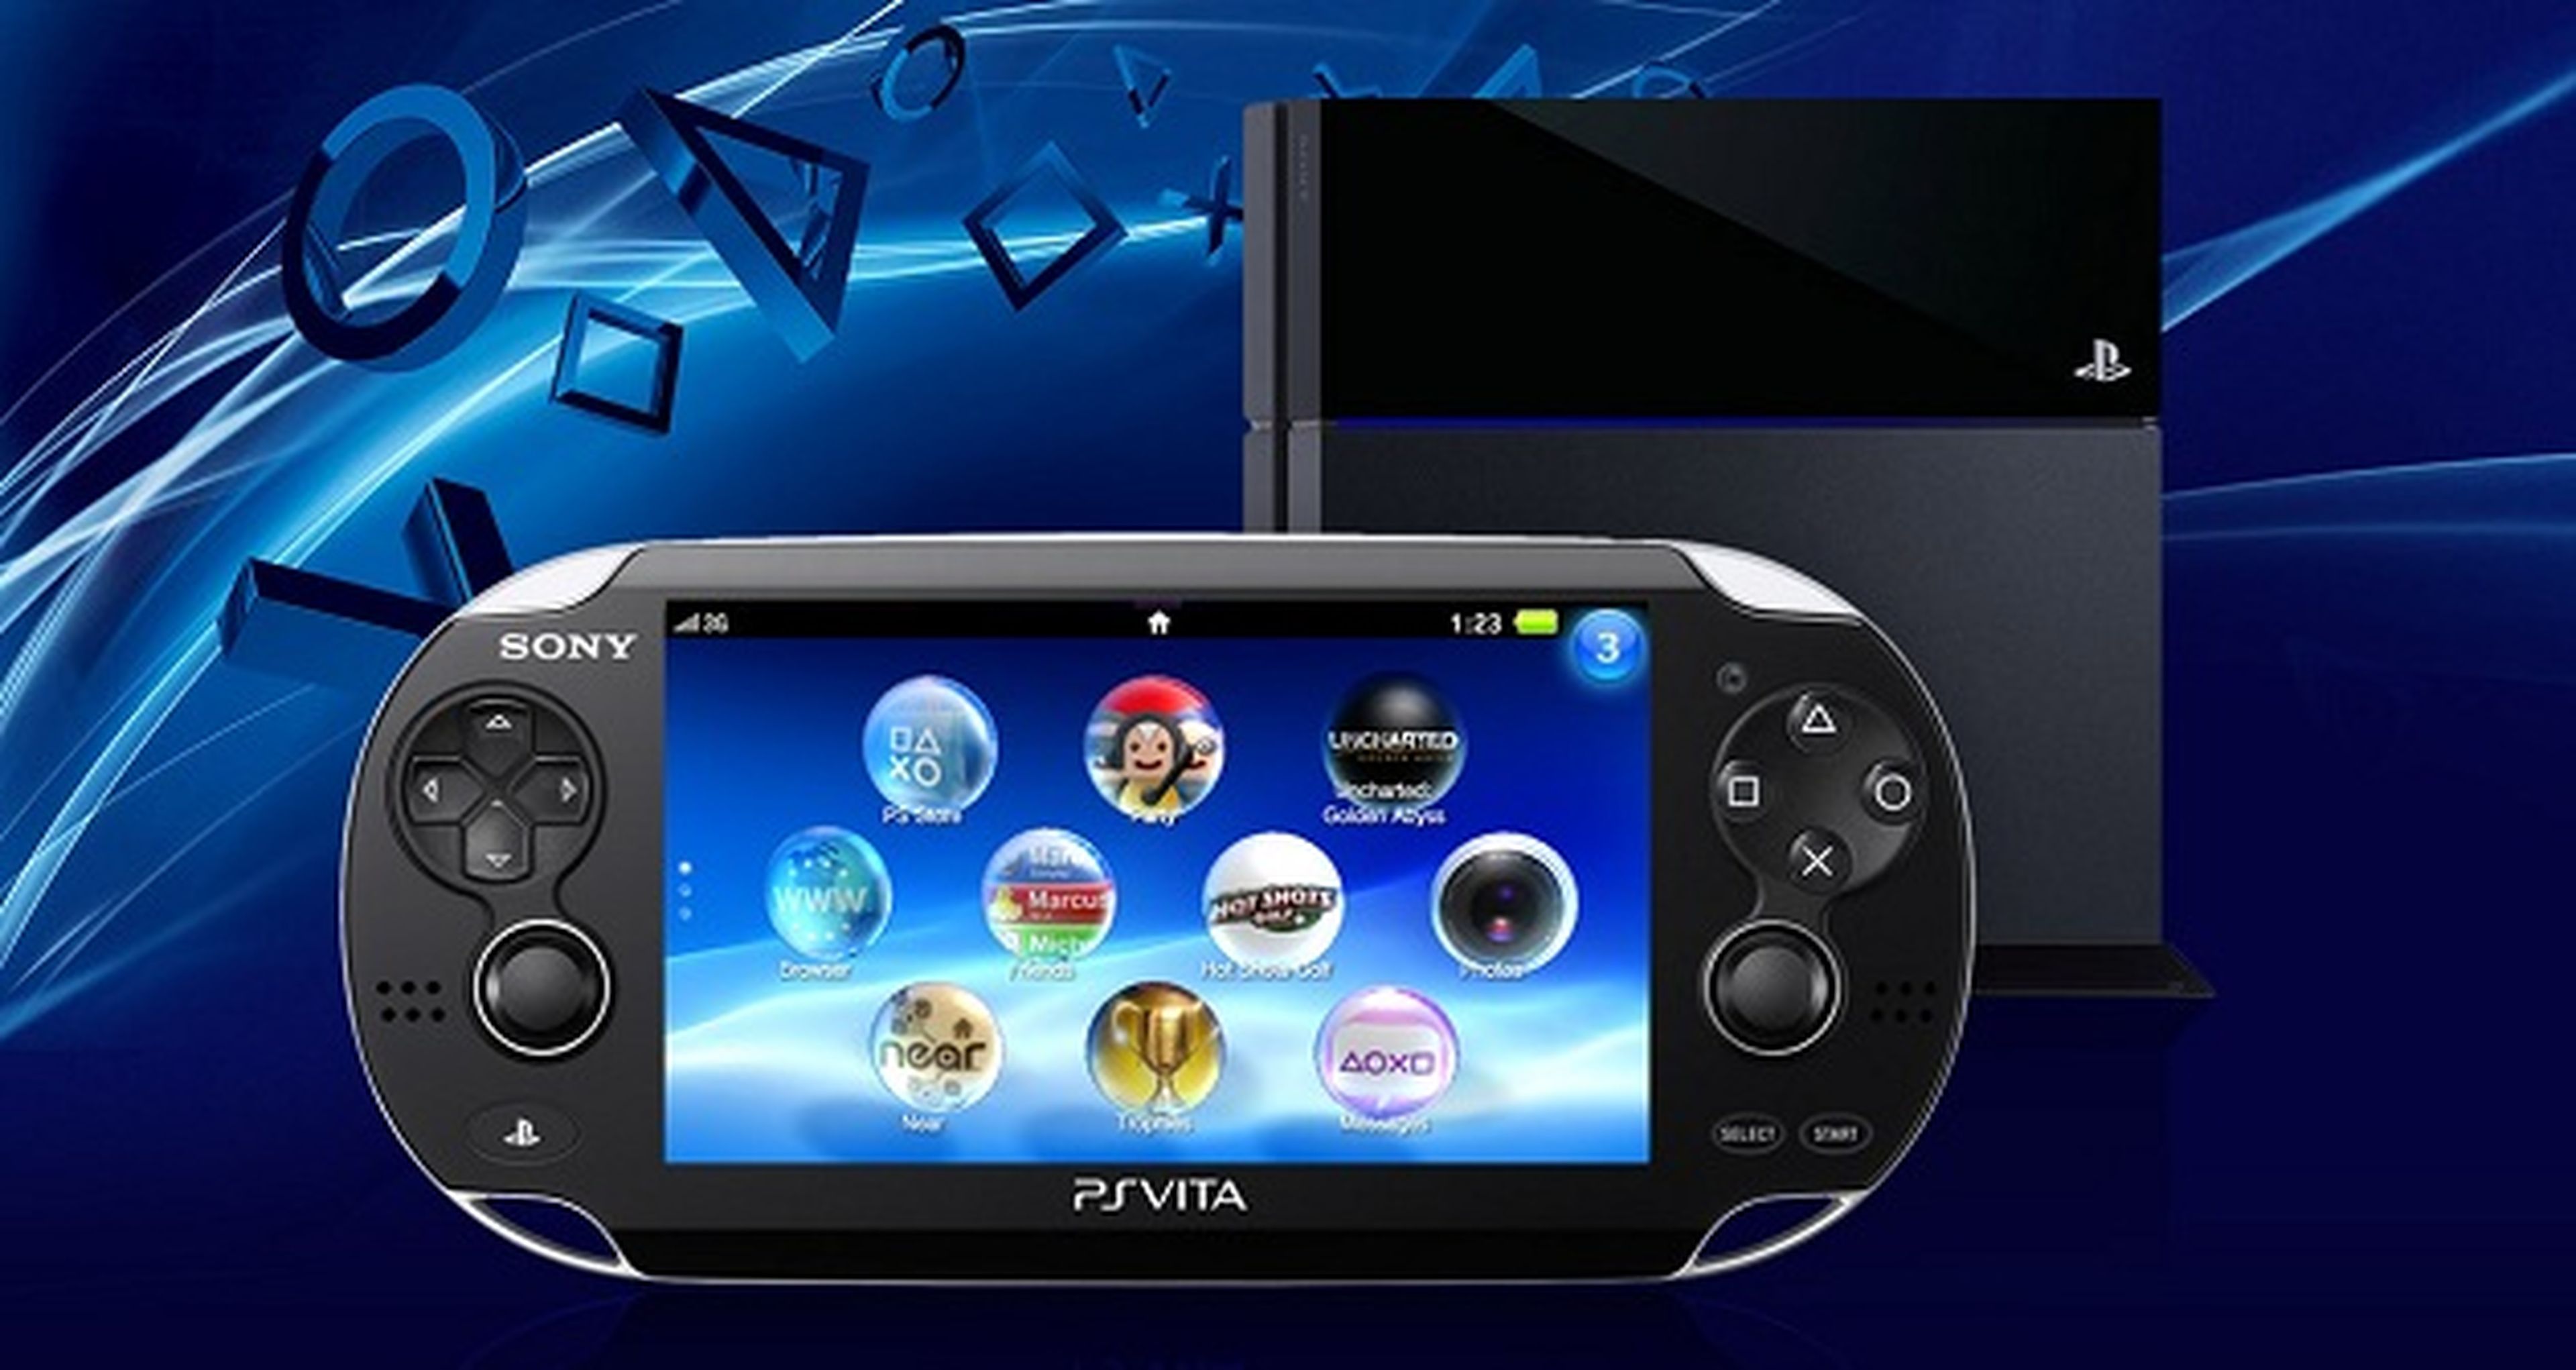 Filtrado el pack de PlayStation 4 con PlayStation Vita